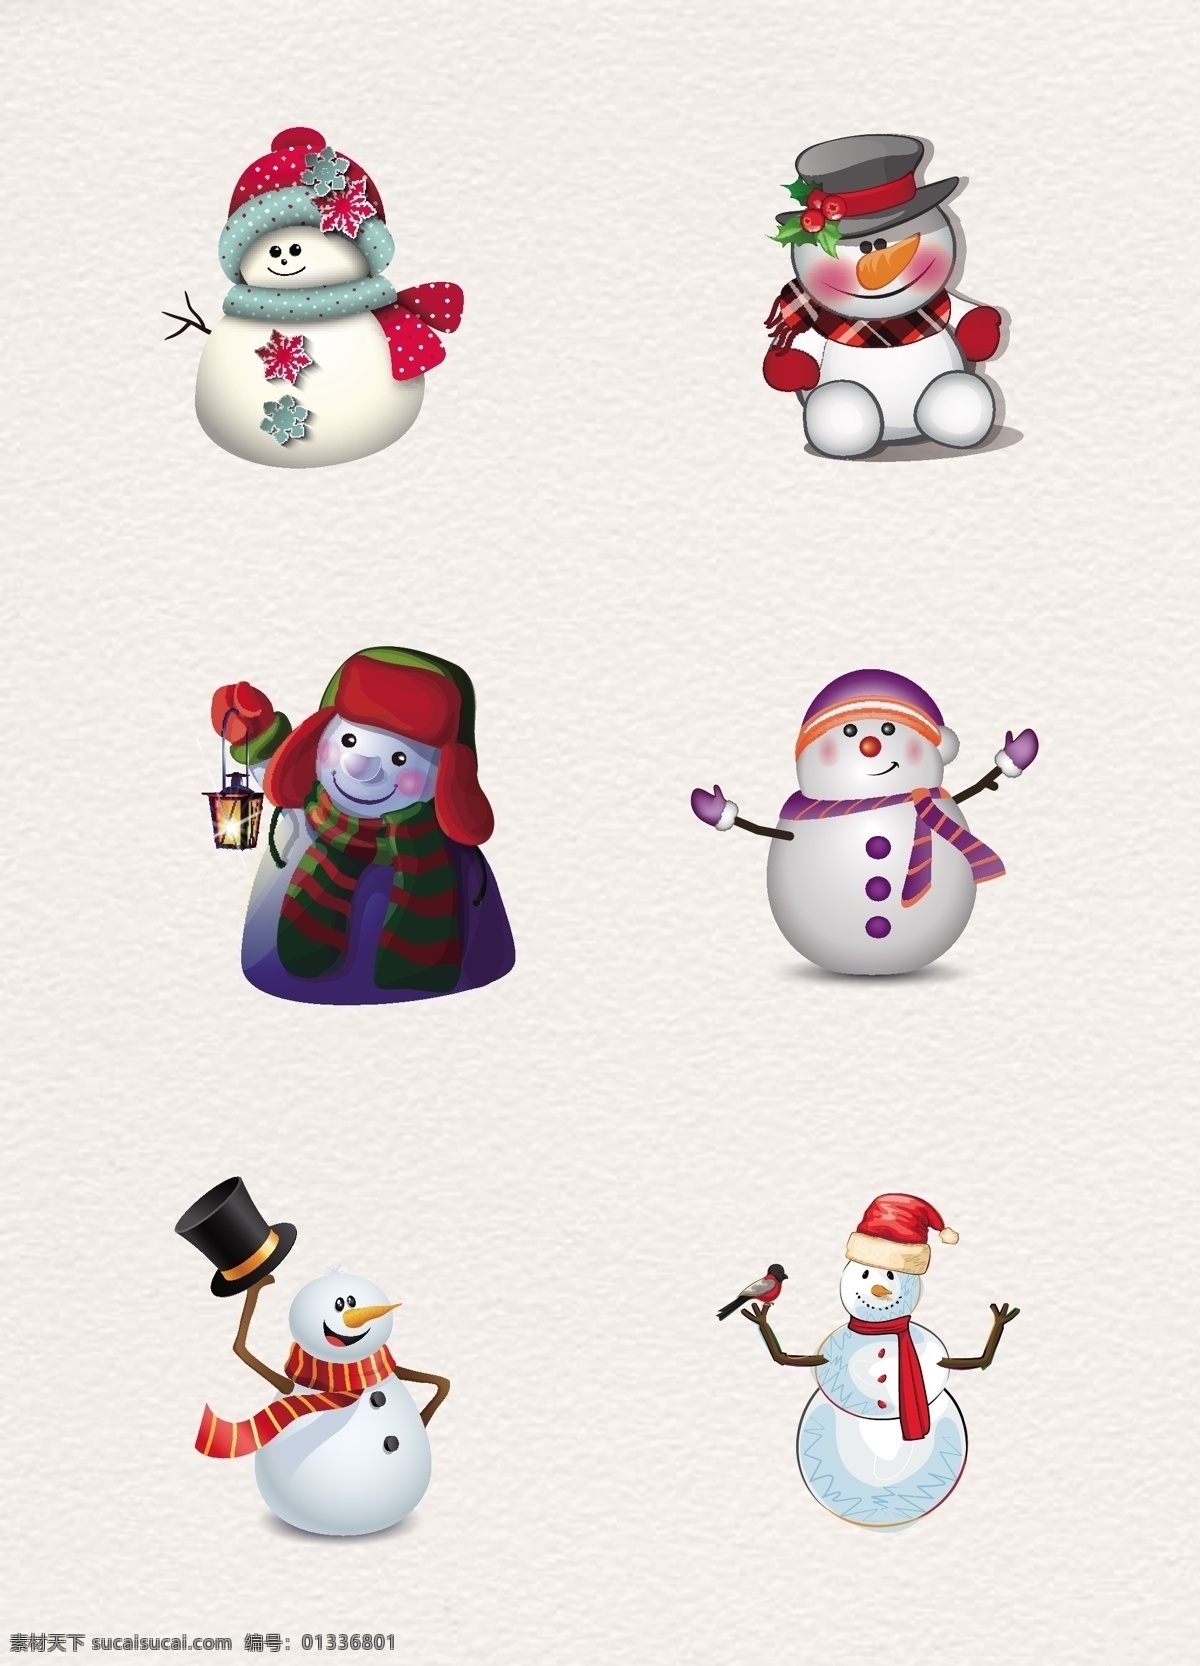 彩绘 可爱 雪人 冬季 元素 矢量图 围巾 节日元素 圣诞节元素 圣诞装扮 节日装饰